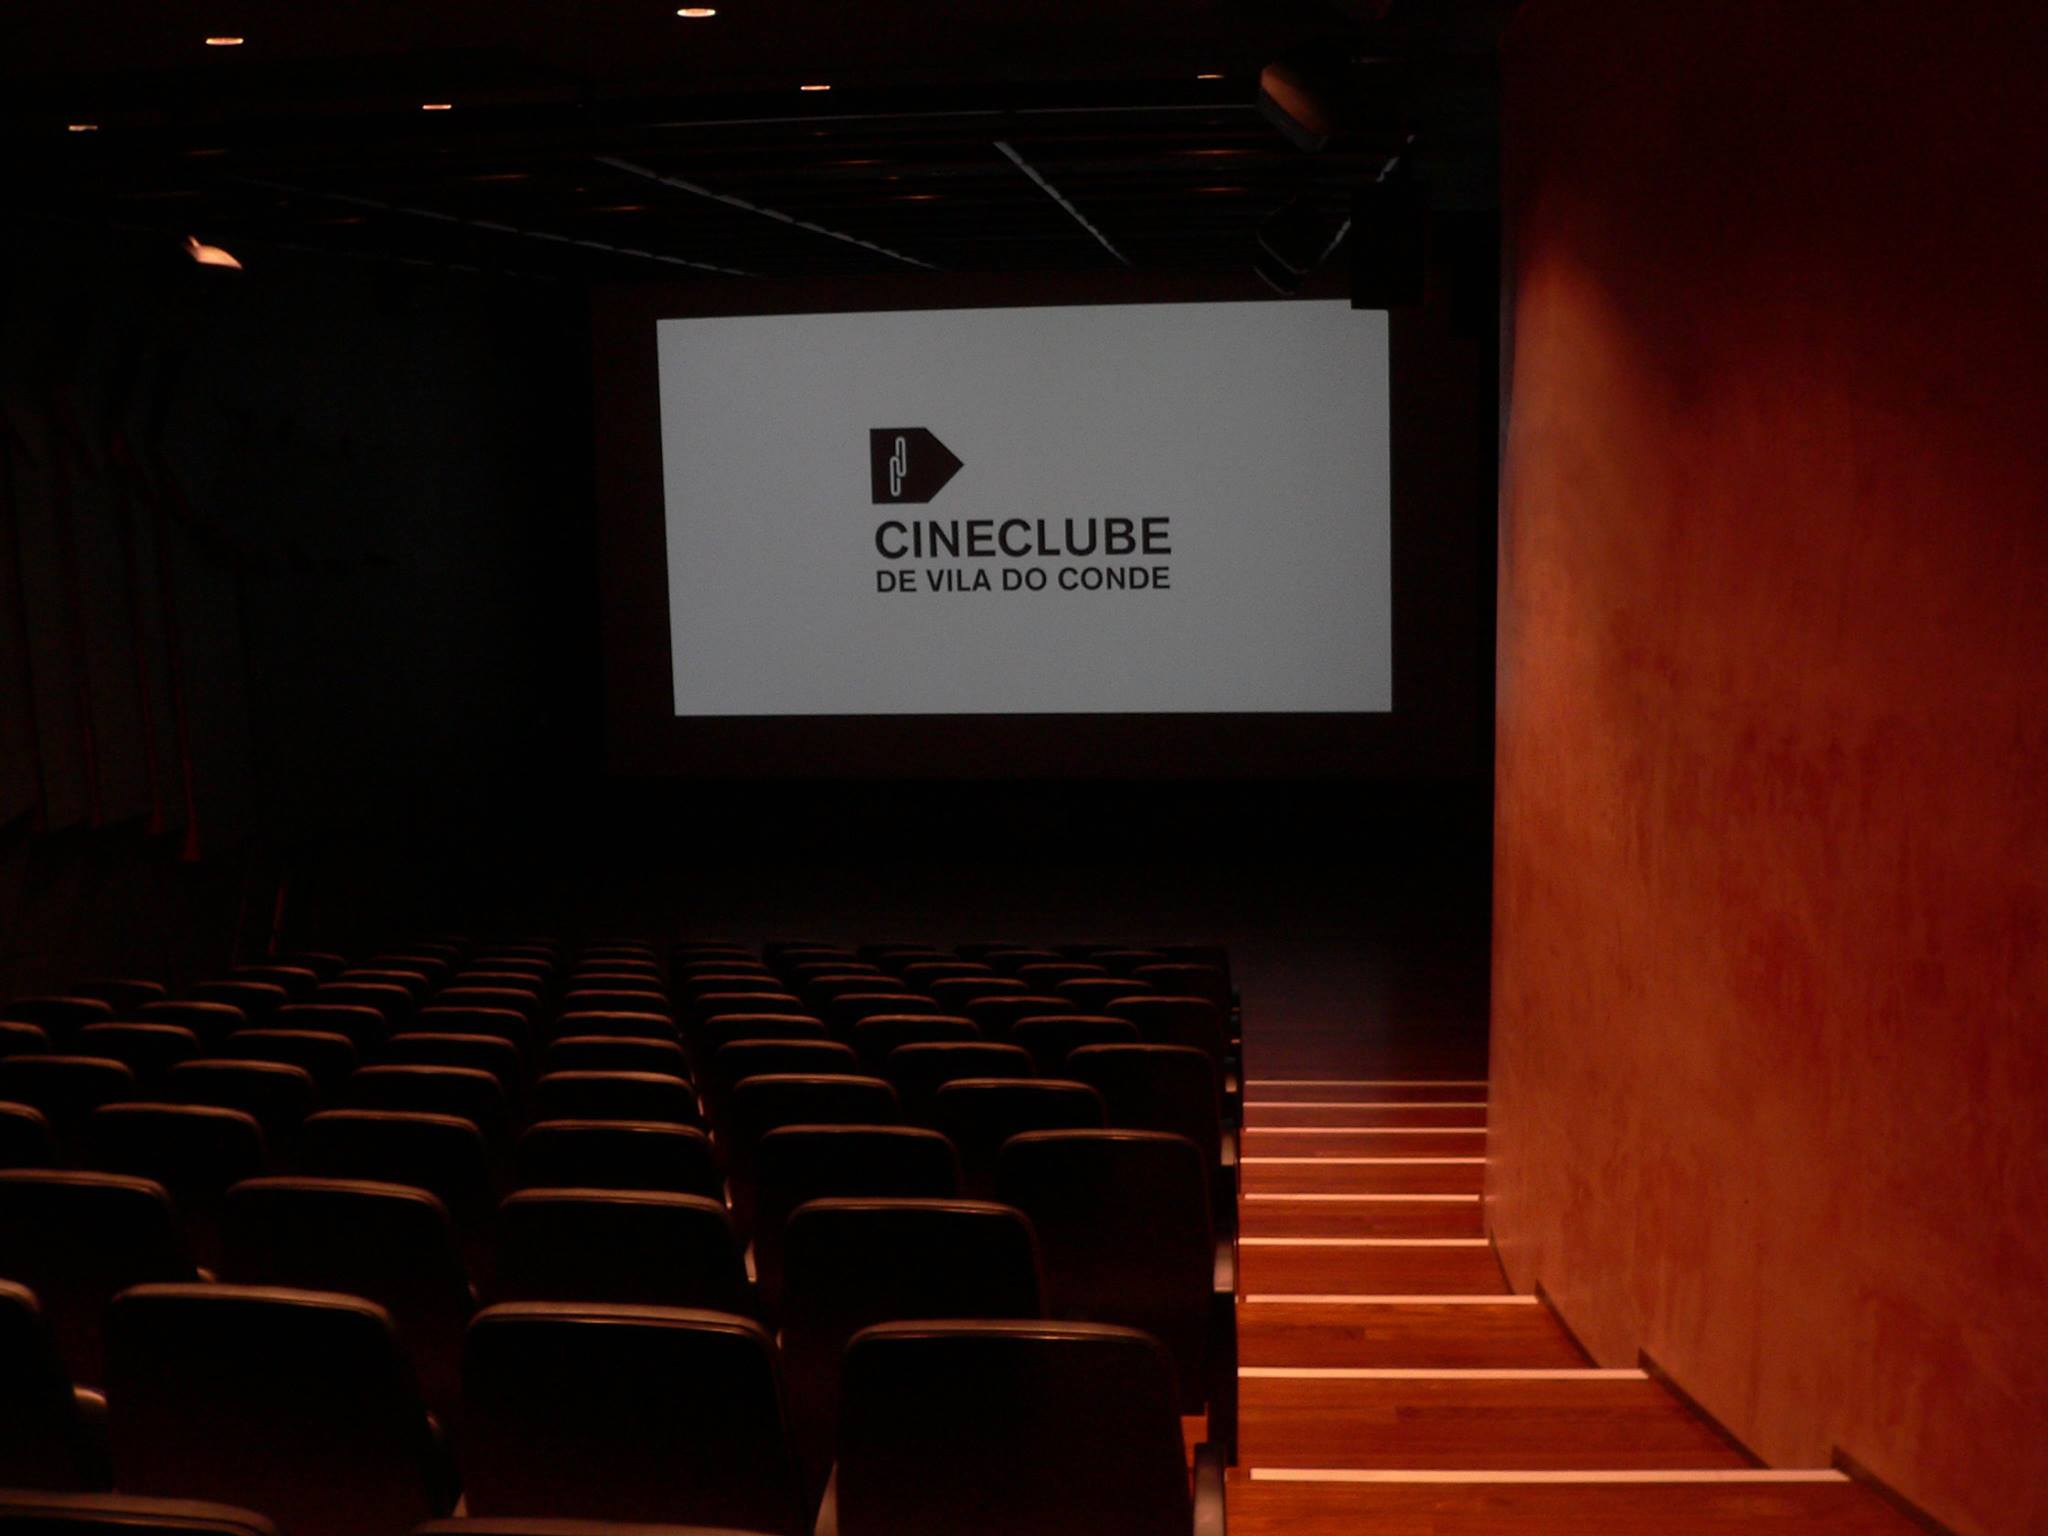 Cineclube de Vila do Conde_sala_cineclube